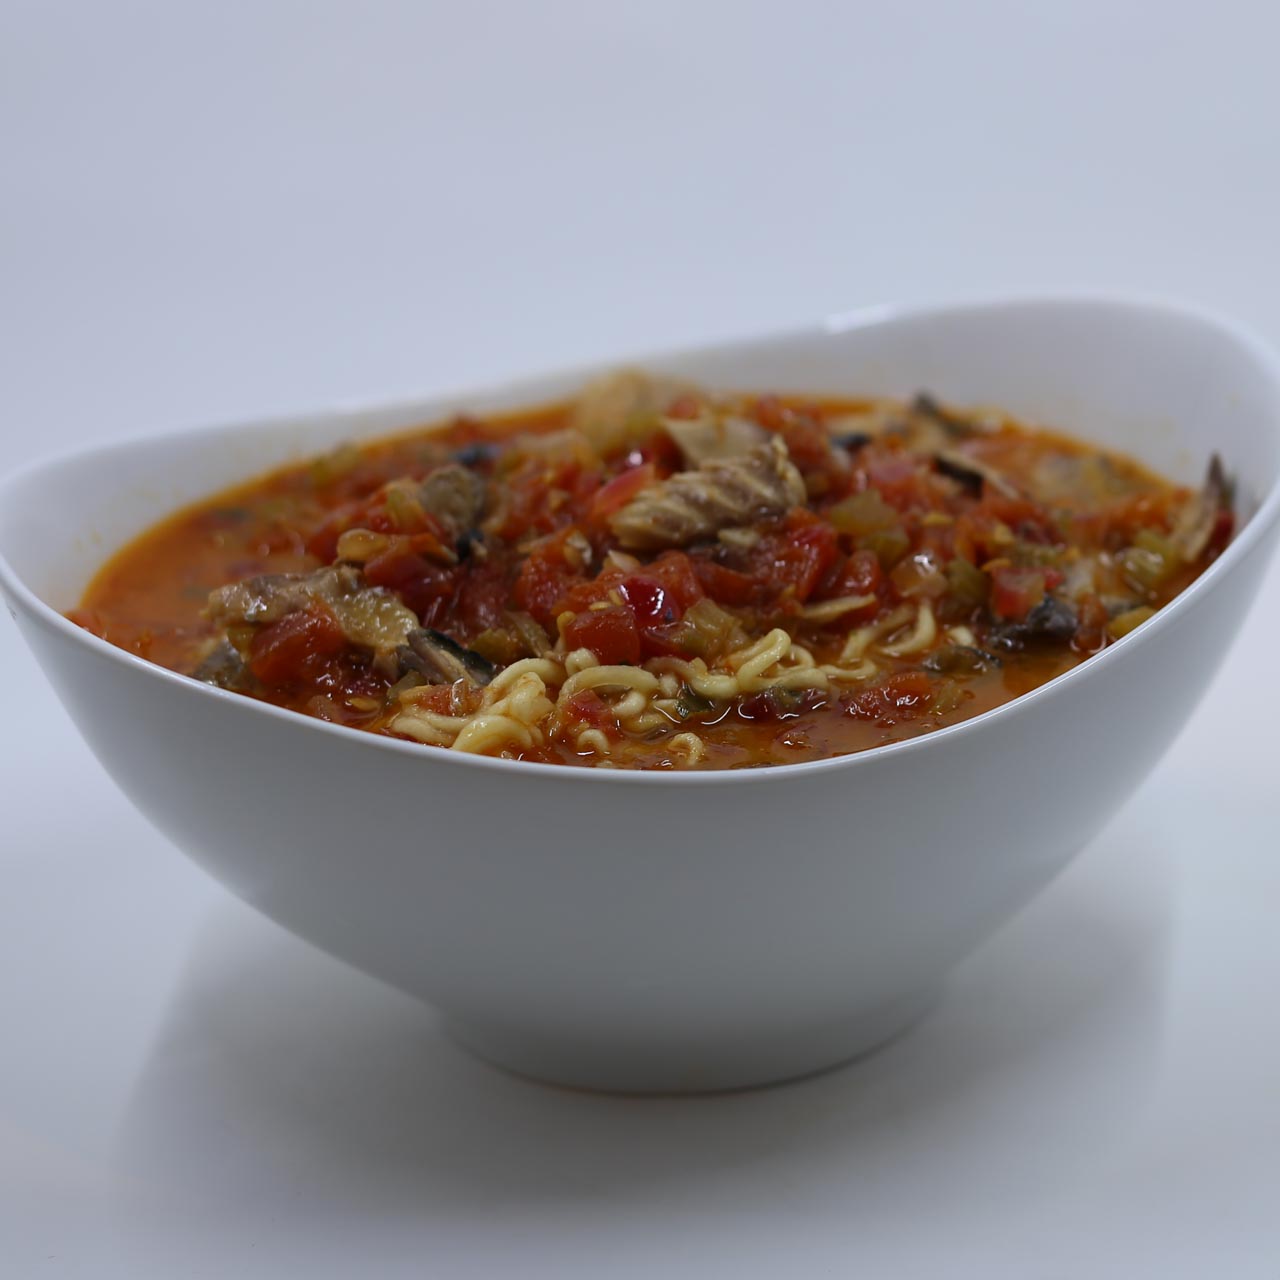 Khiem's Sweet-Sour-Spicy Fish Soup